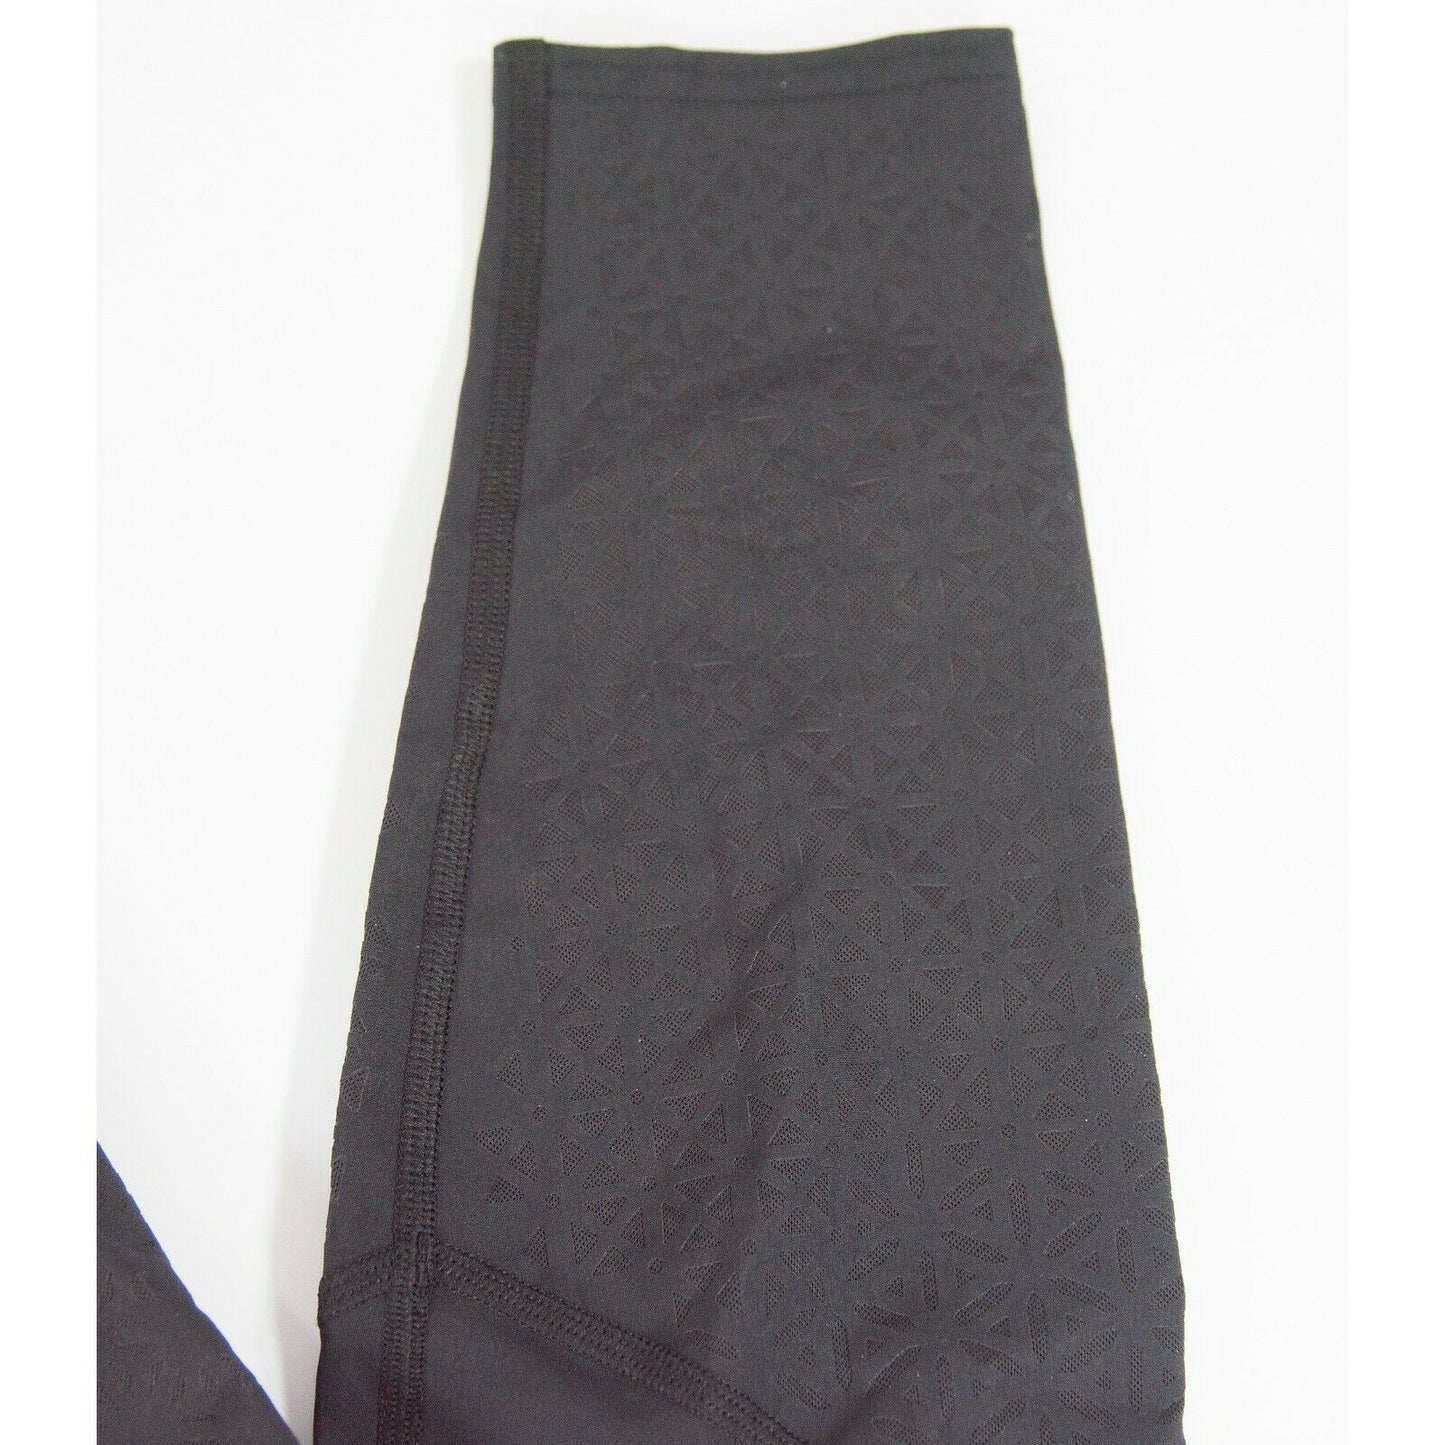 Lululemon Black Floral Mesh Bottom Thick tight leggings NWOT Size 8 C9